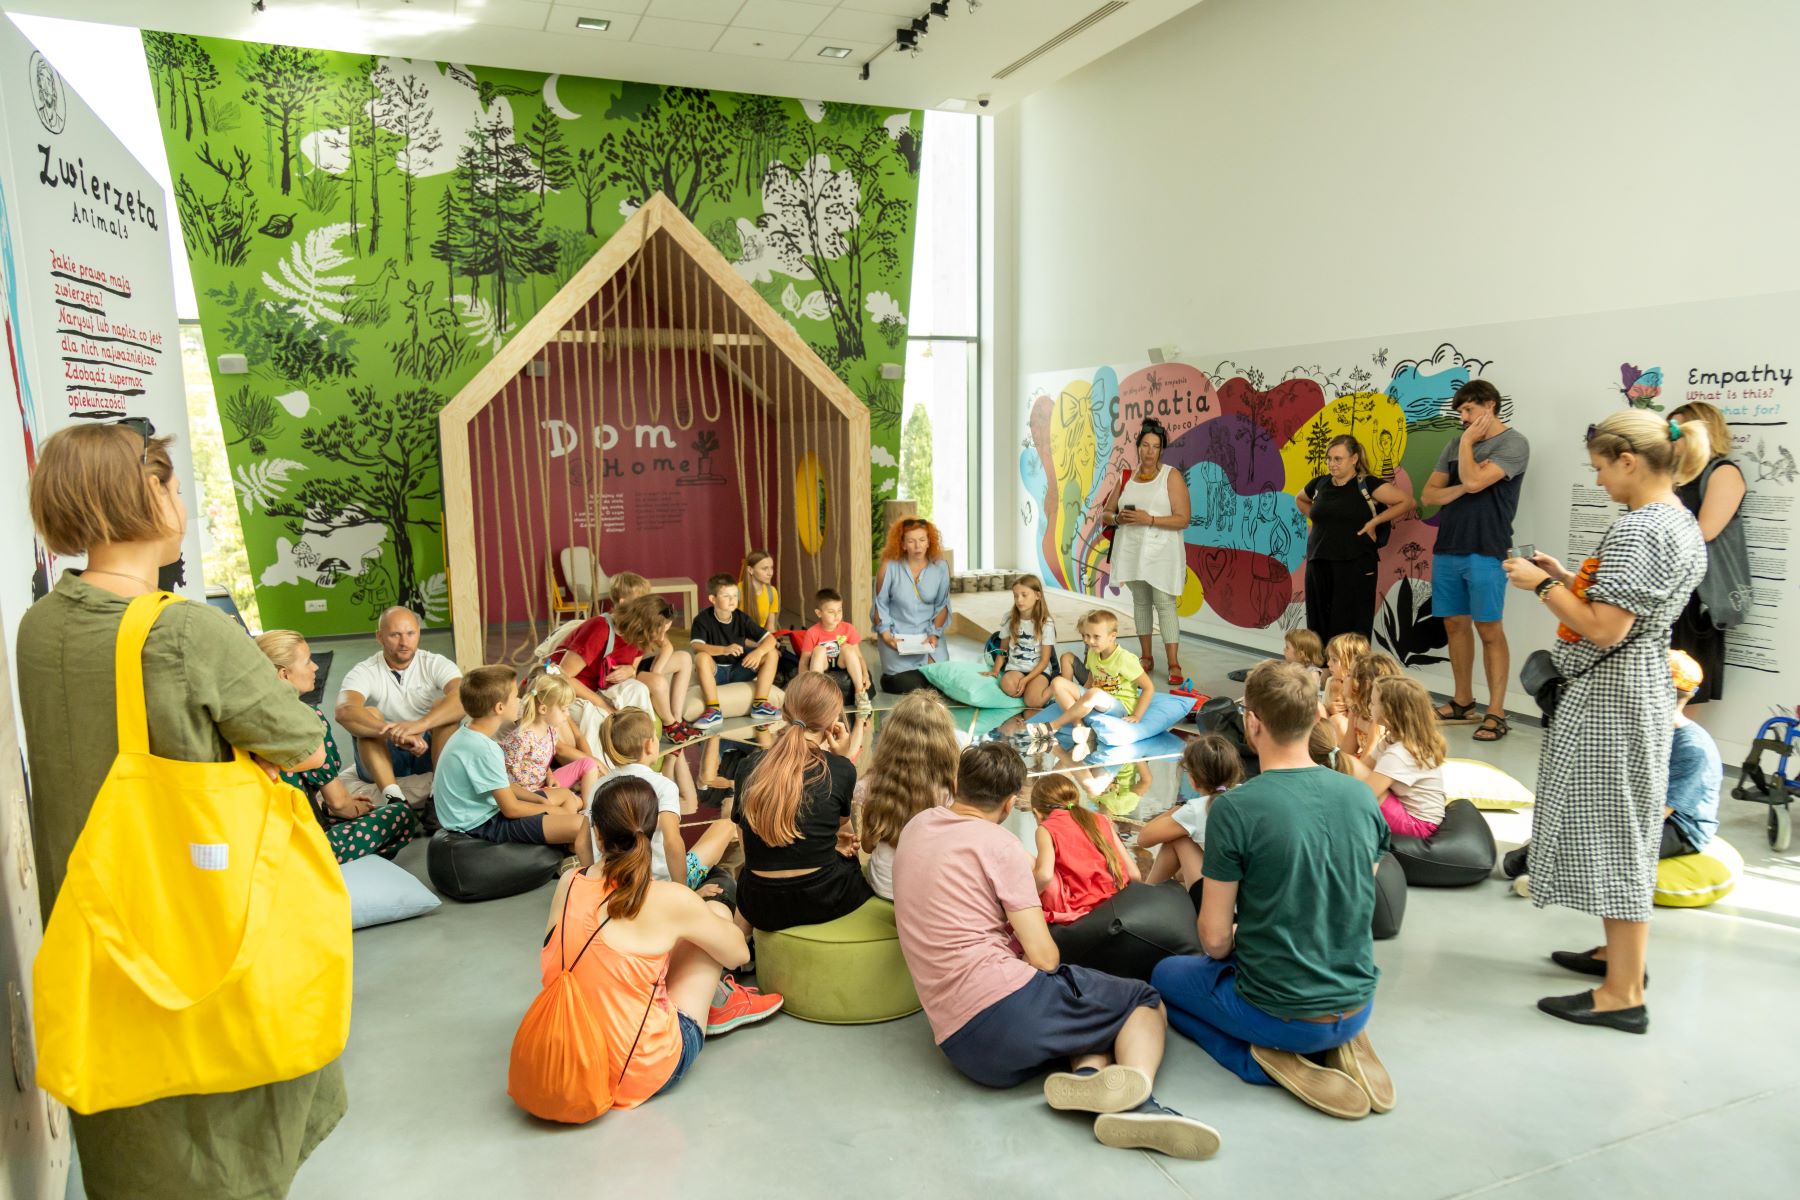 Dzieci i rodzice siedzą na podłodze na wystawie "Elementarz empatii" w Łodzi.